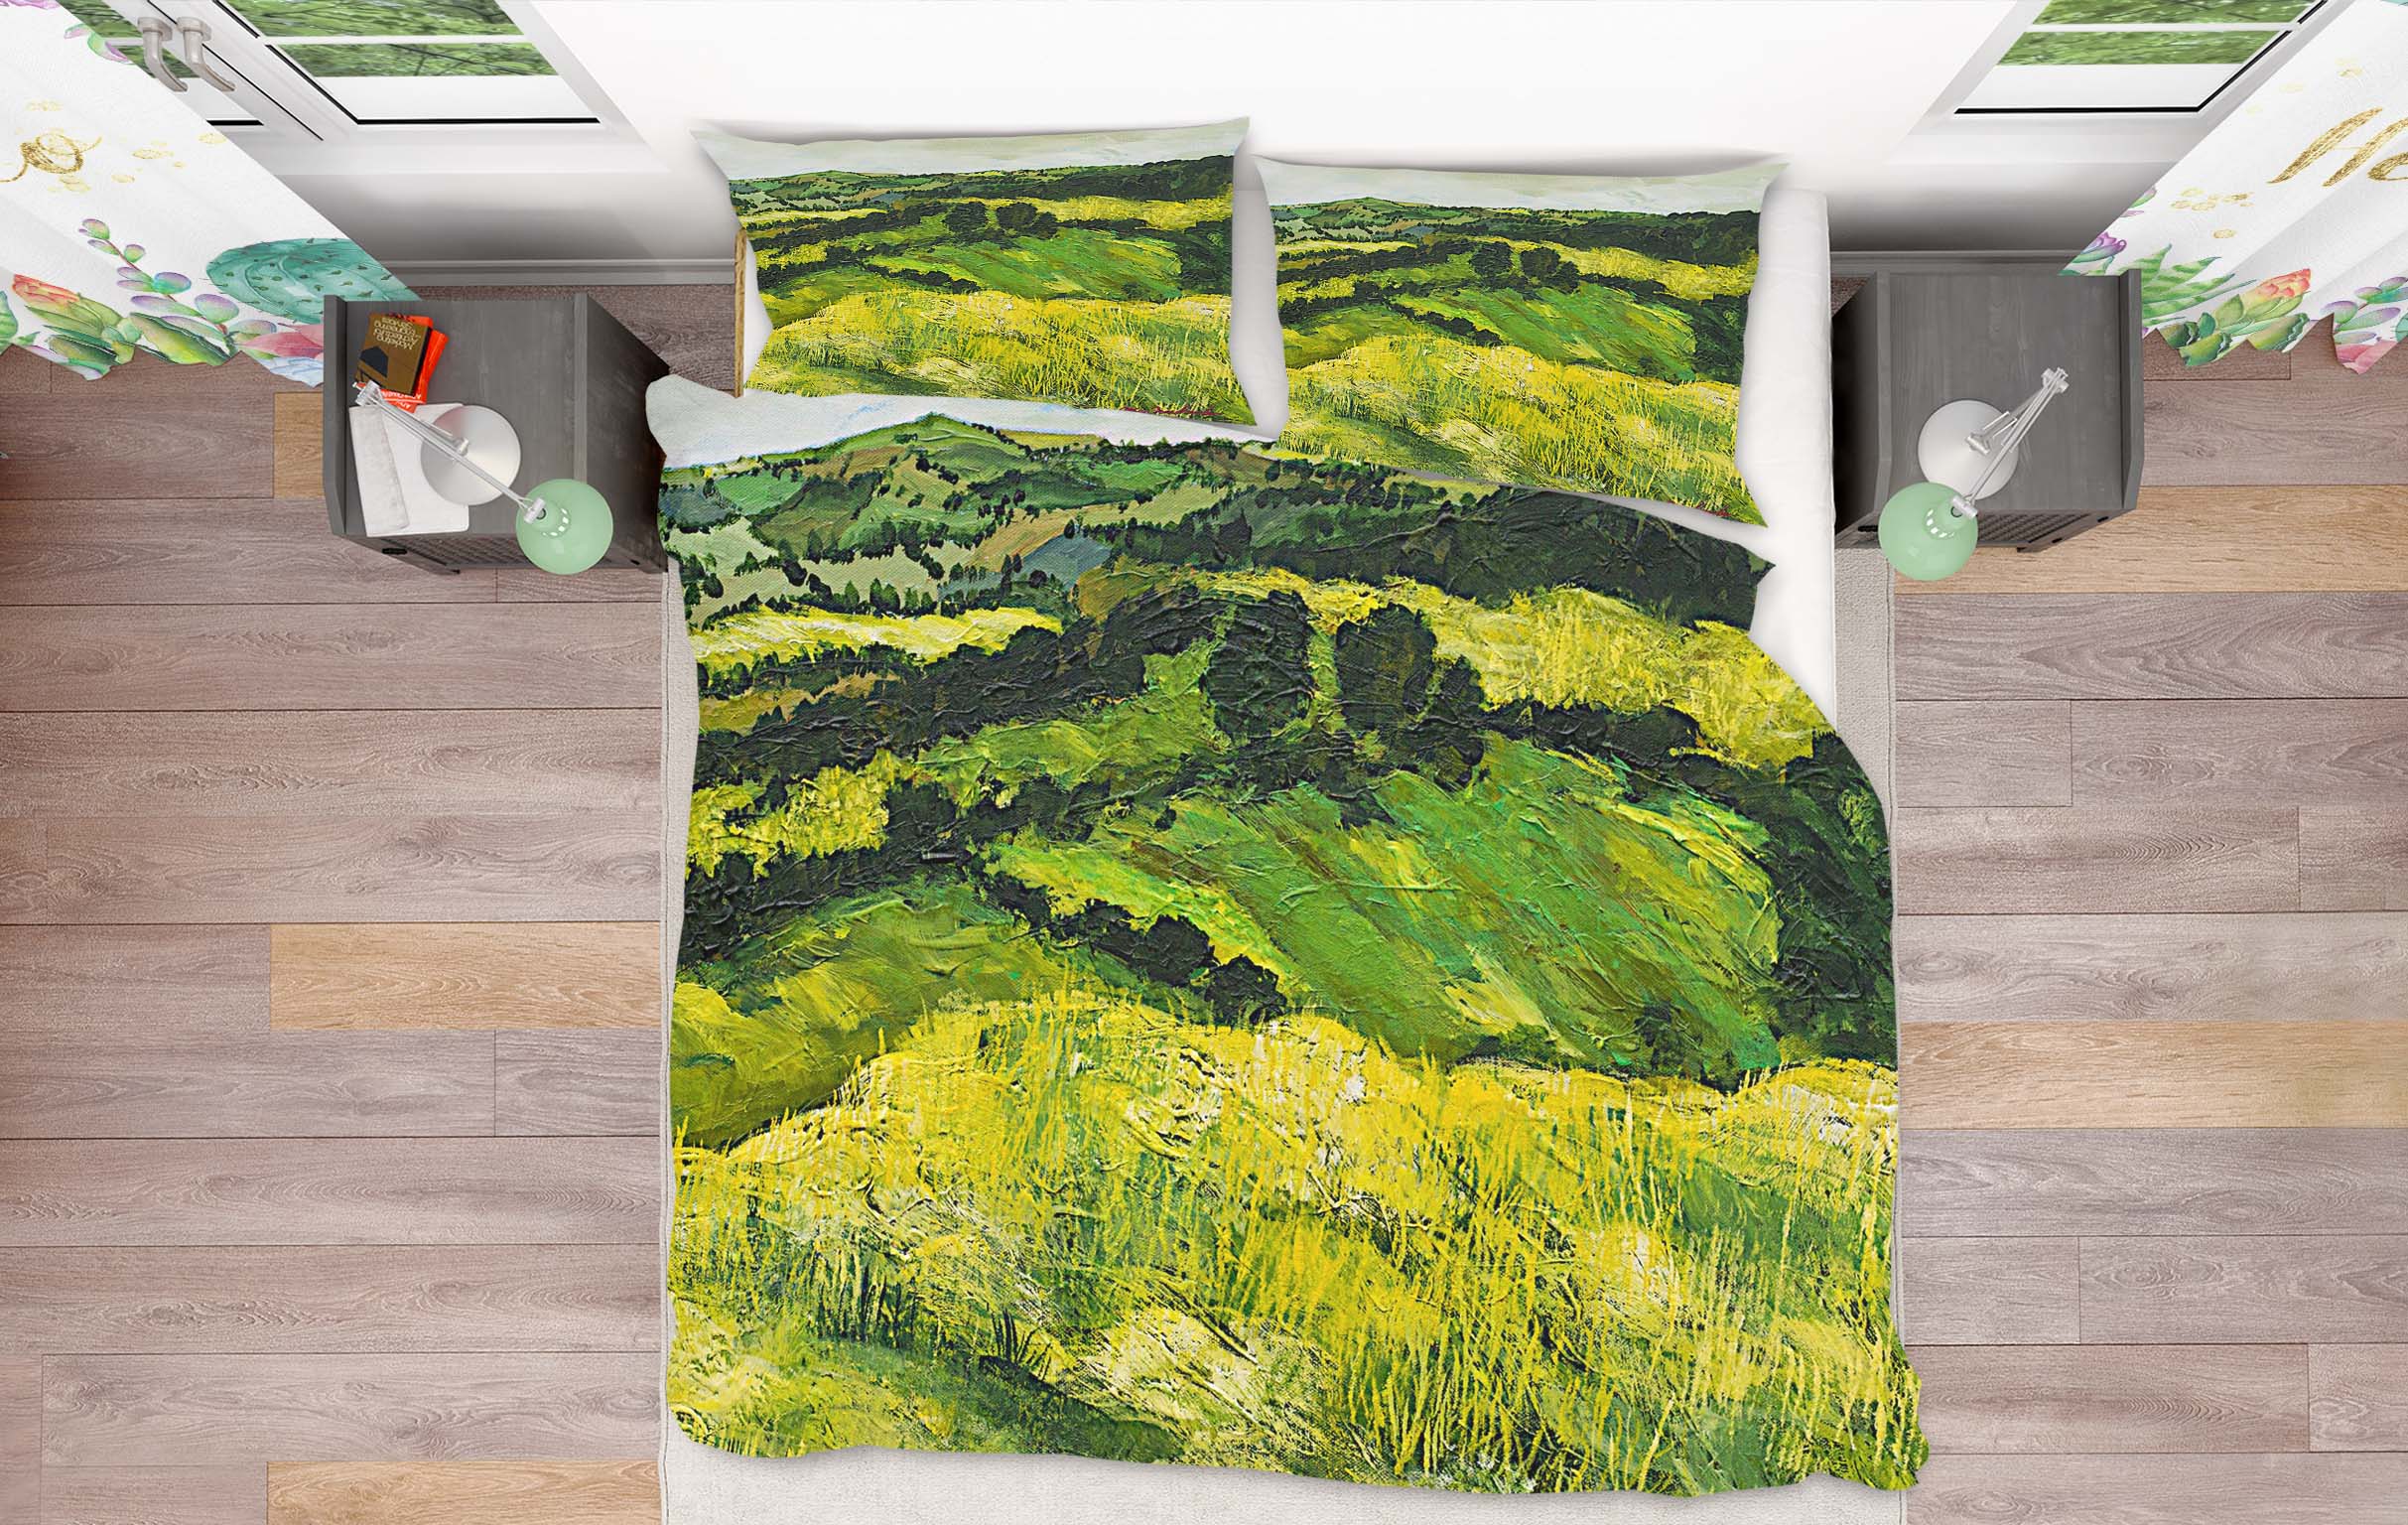 3D Tall Grass Path 1060 Allan P. Friedlander Bedding Bed Pillowcases Quilt